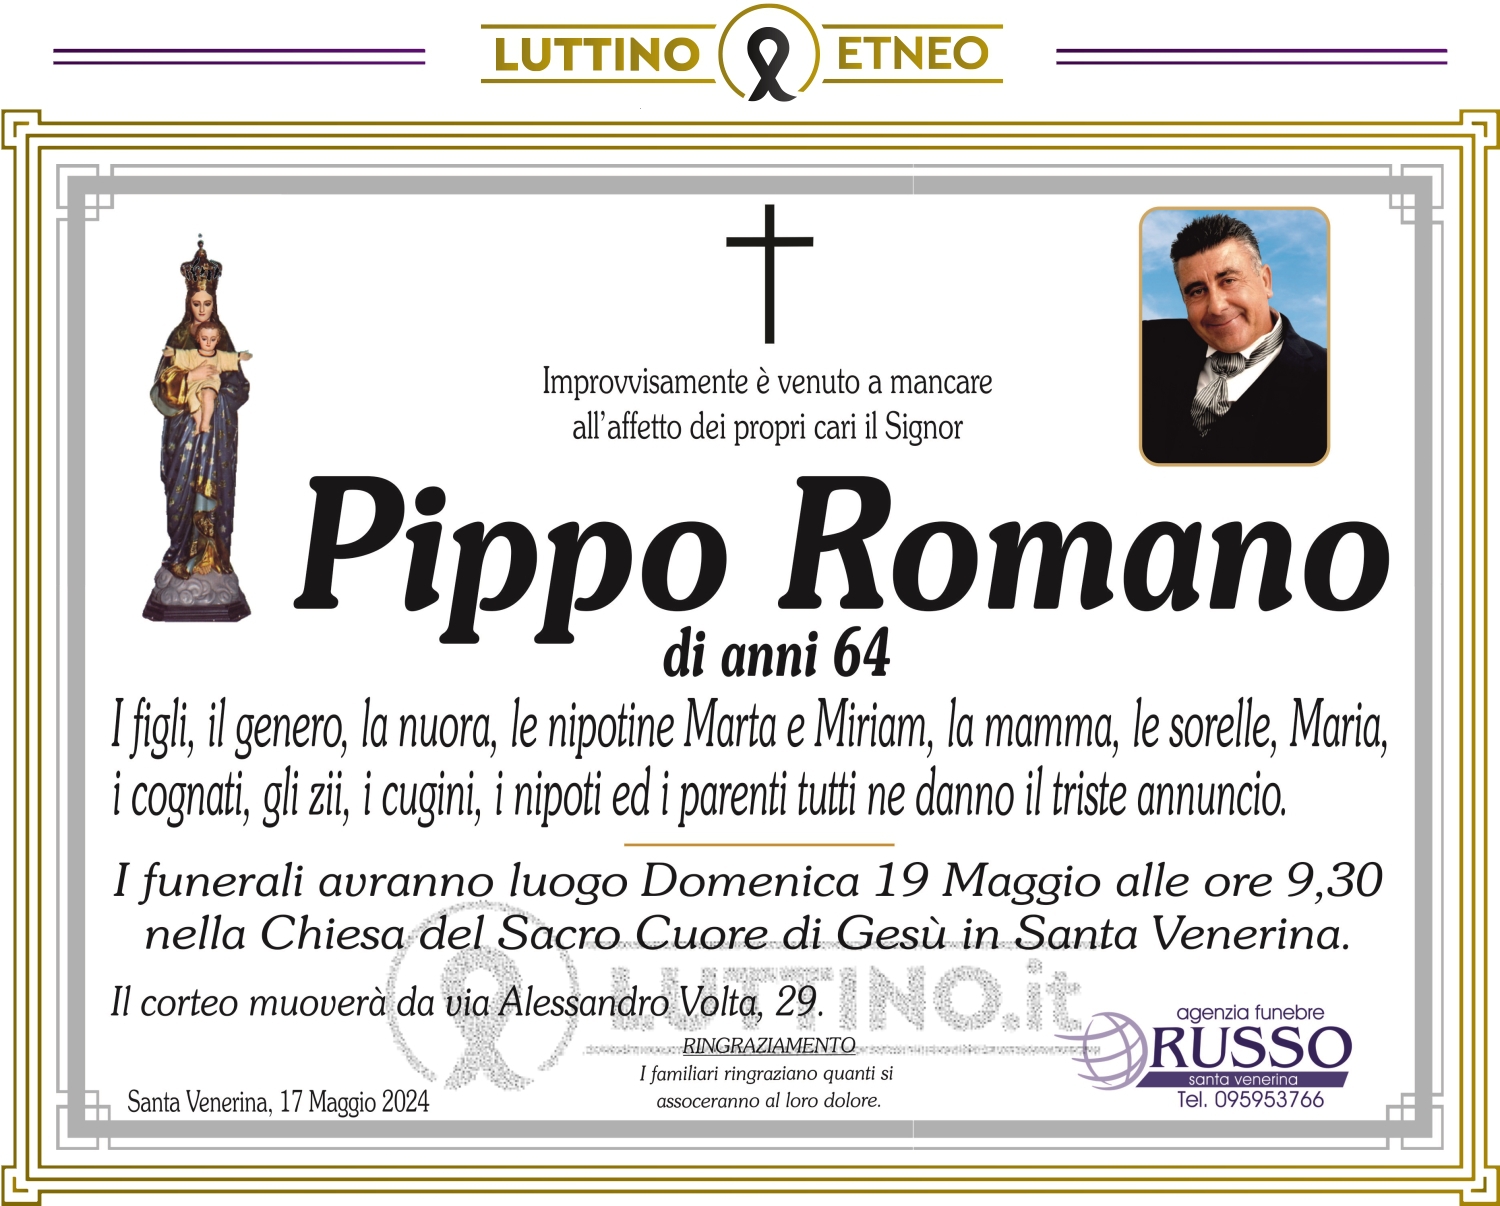 Pippo Romano